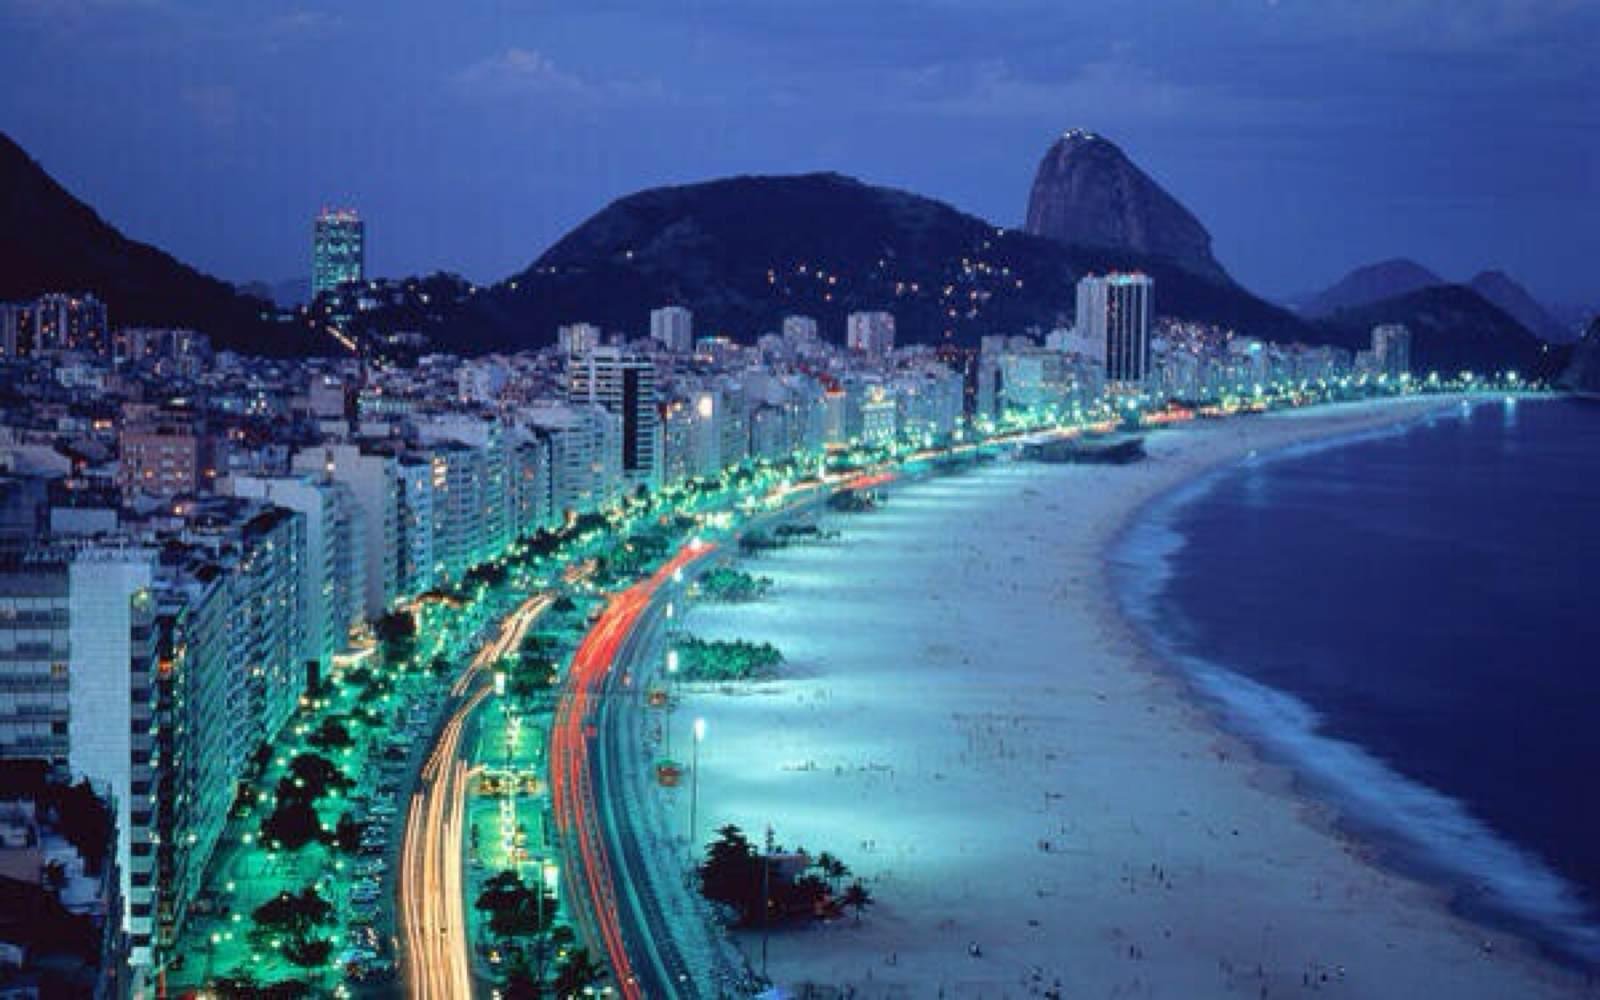 Copacabana Beach In Rio De Janeiro 106 Reviews And 252 Photos